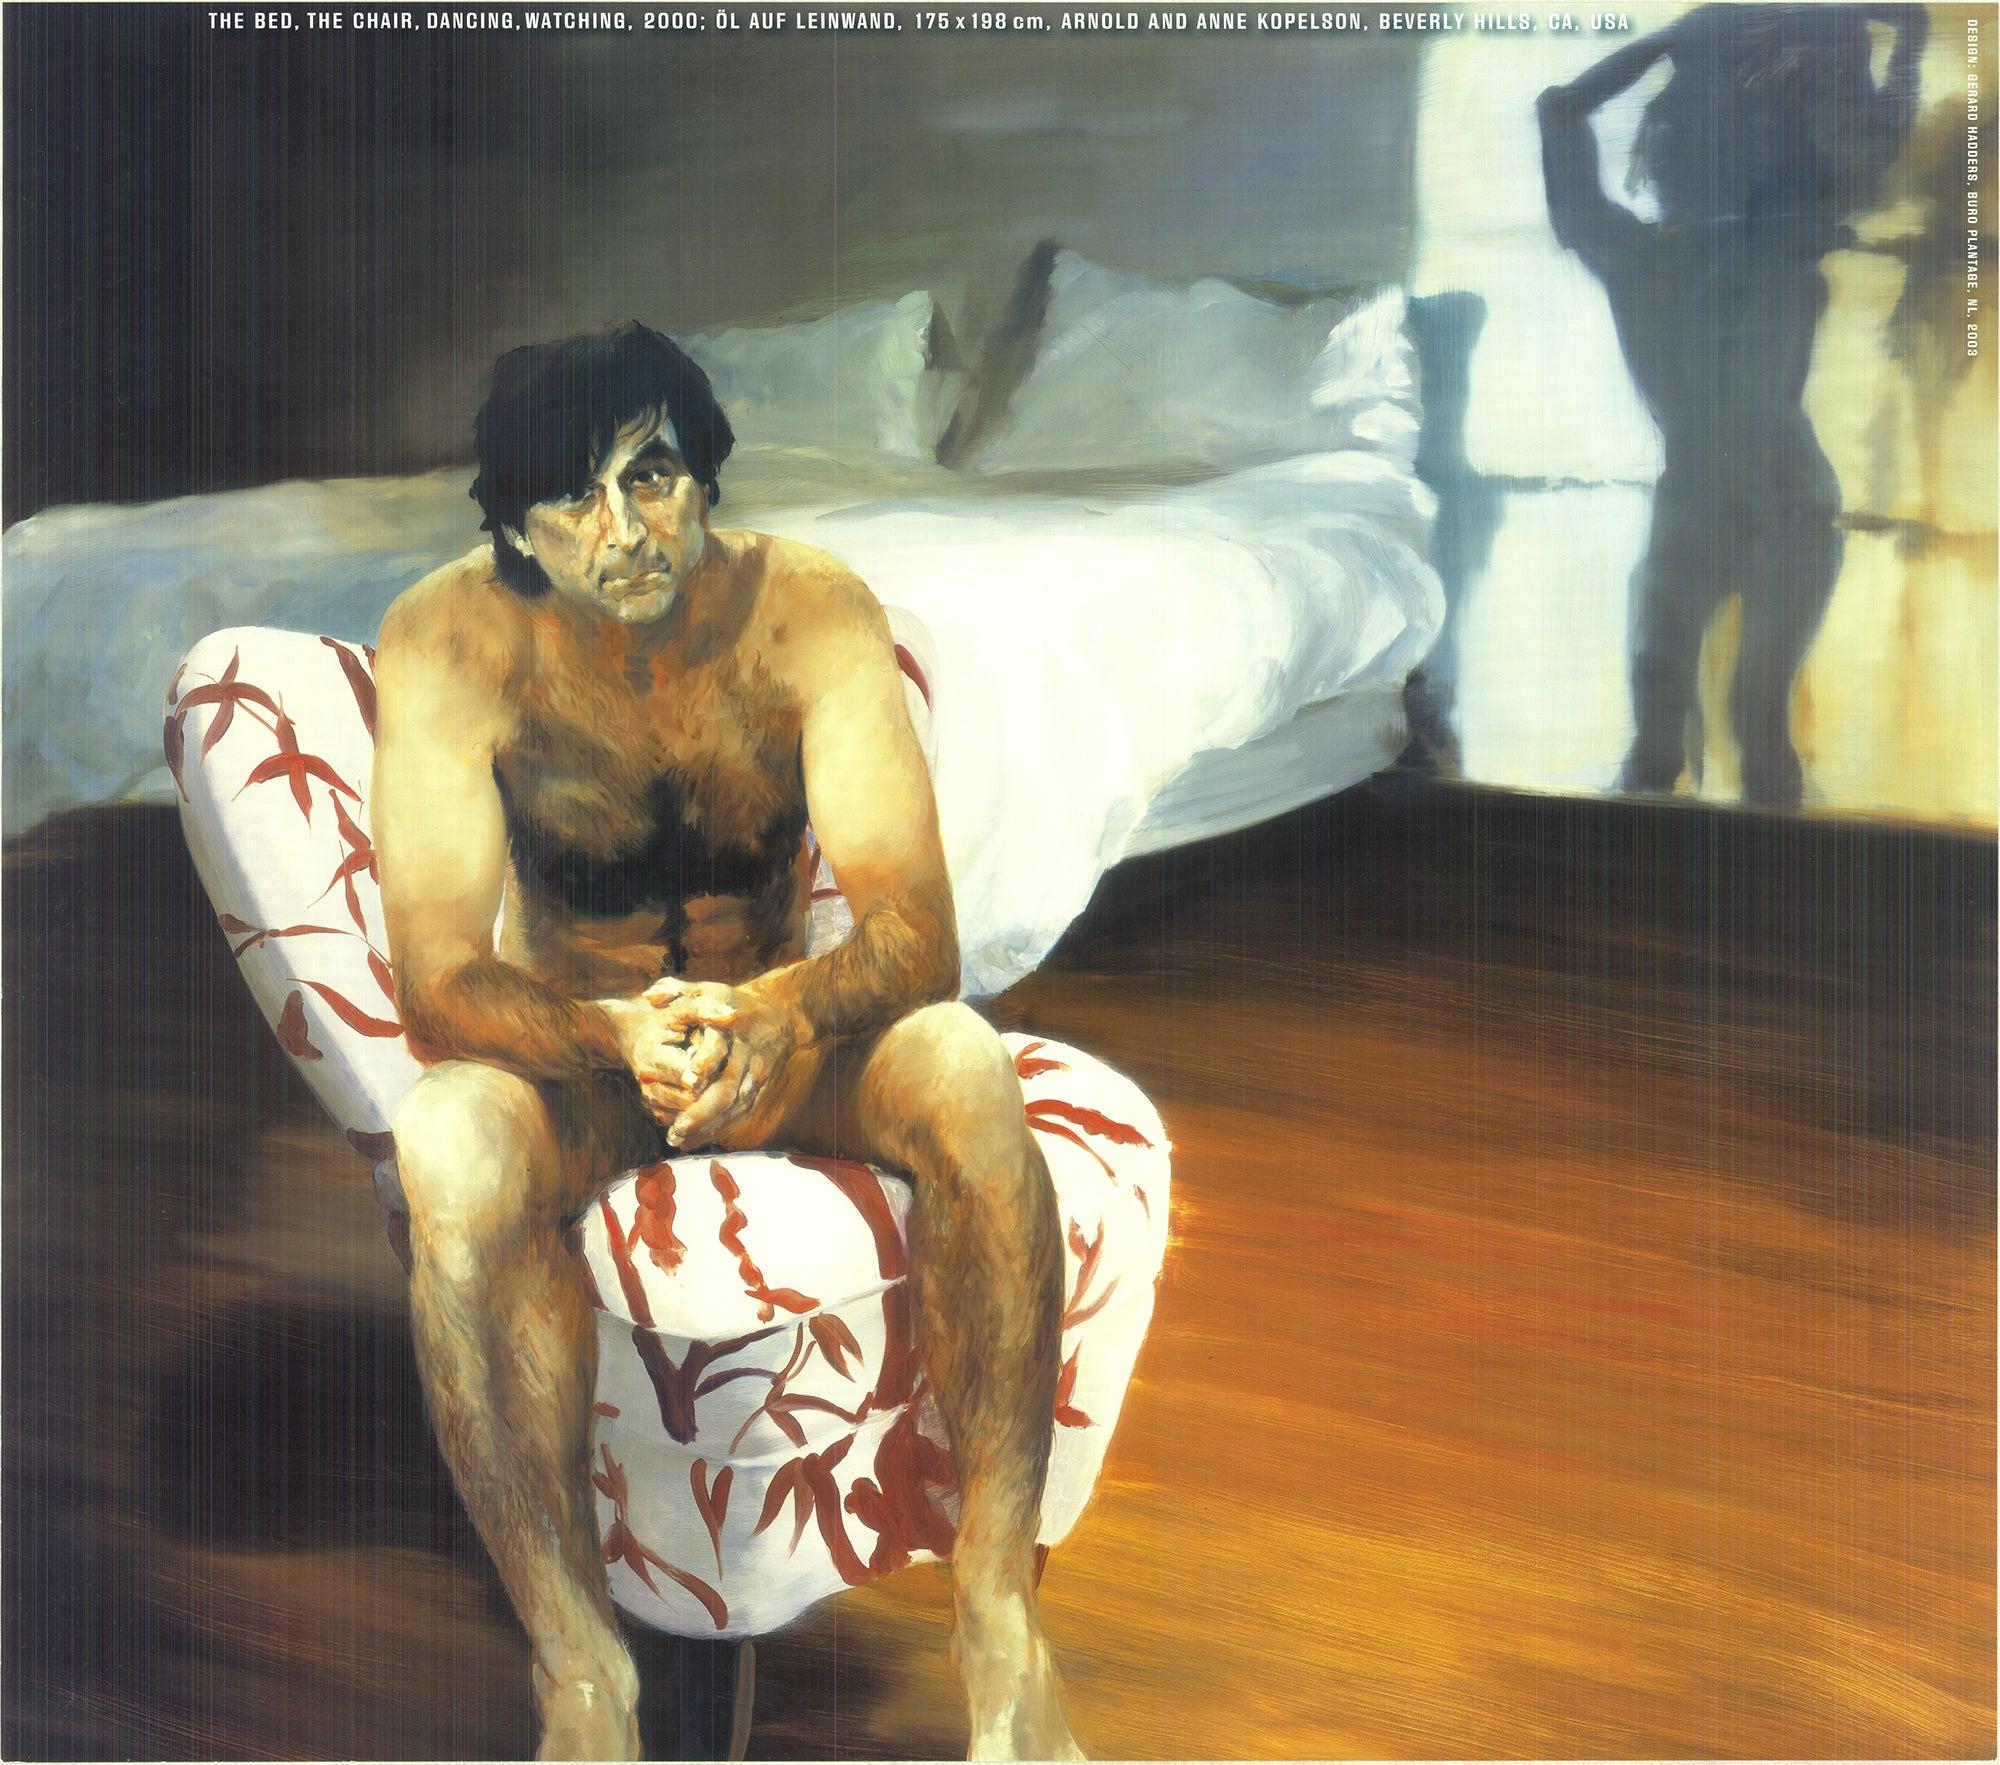 1984 Eric Fischl „Das Bett, der Stuhl, der Tänzerin“